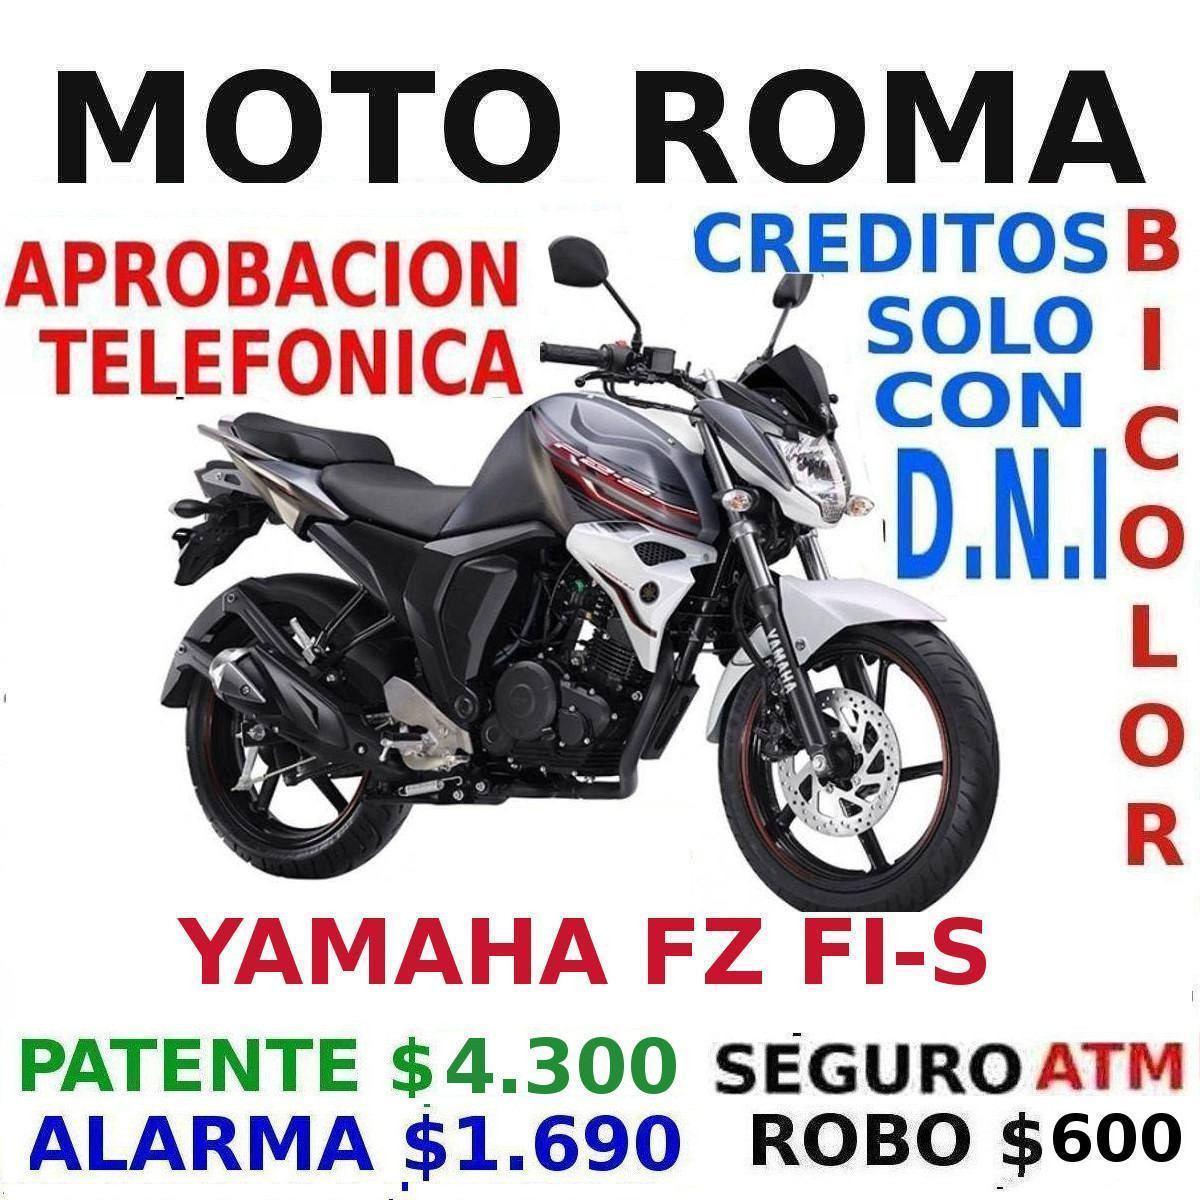 Yamaha Fz Fi Patente $ 4.300